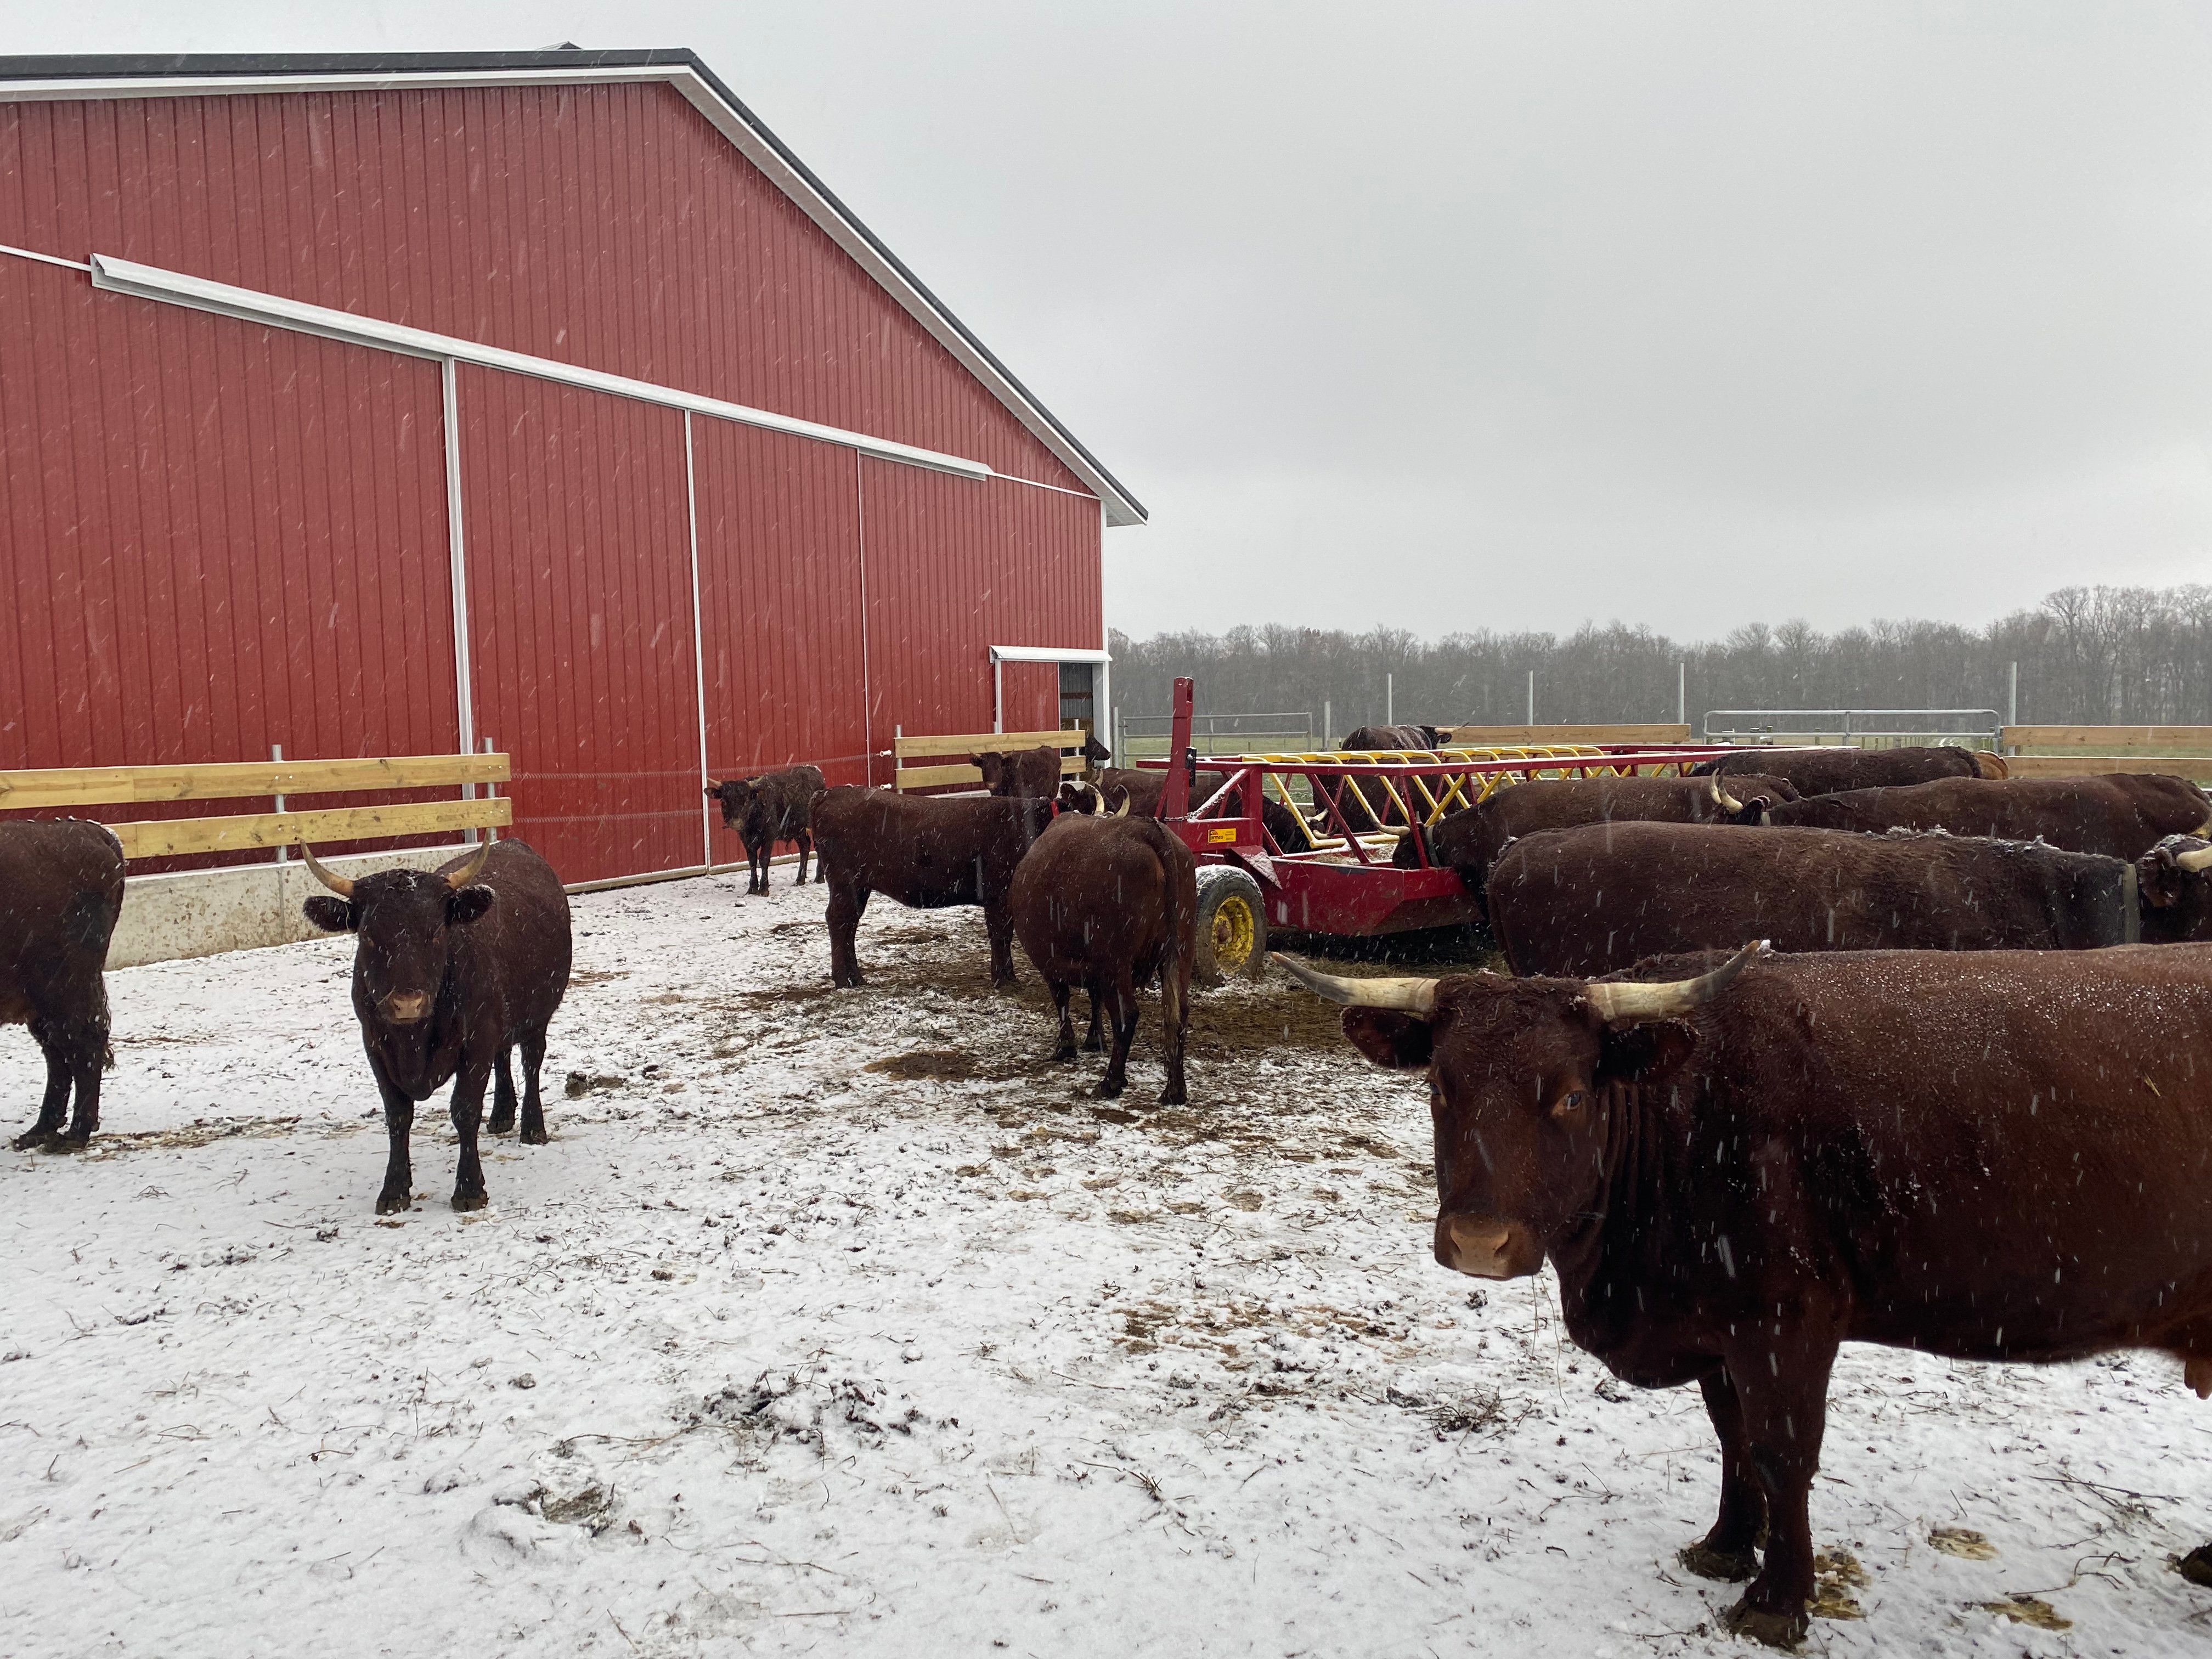 Cows on the Freier family's Every Season Farm.